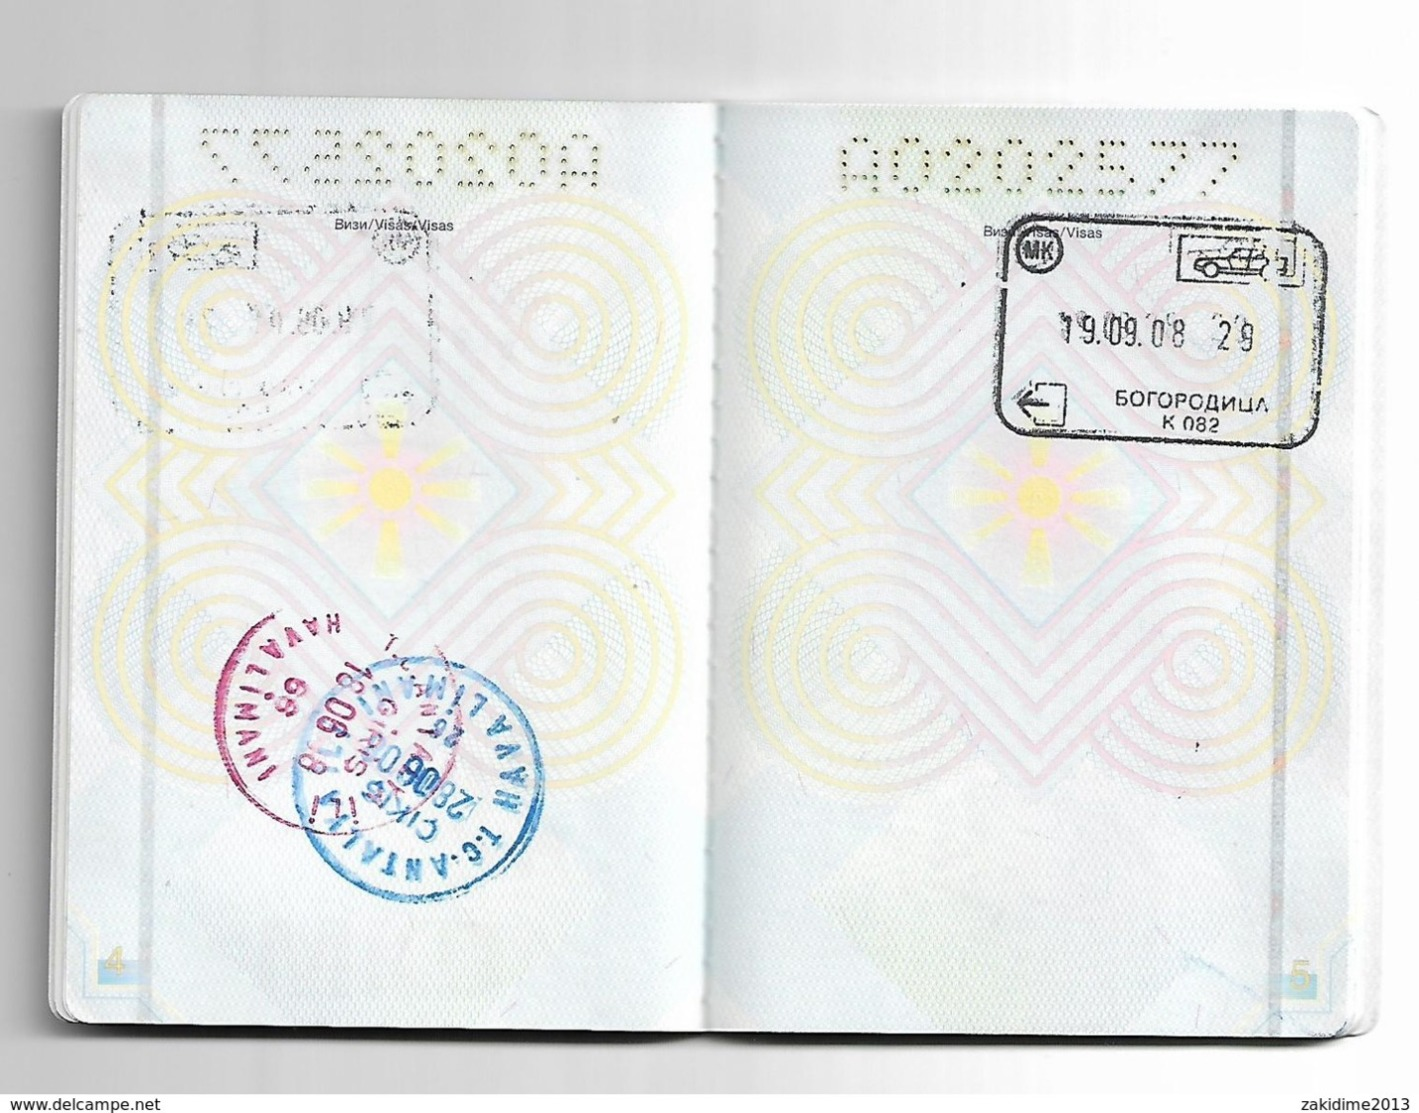 Passeport,passport, Pasaporte, Reisepass,Republic Of Macedonia For BABY And VISA Germany Turky Bulgaria... - Documenti Storici